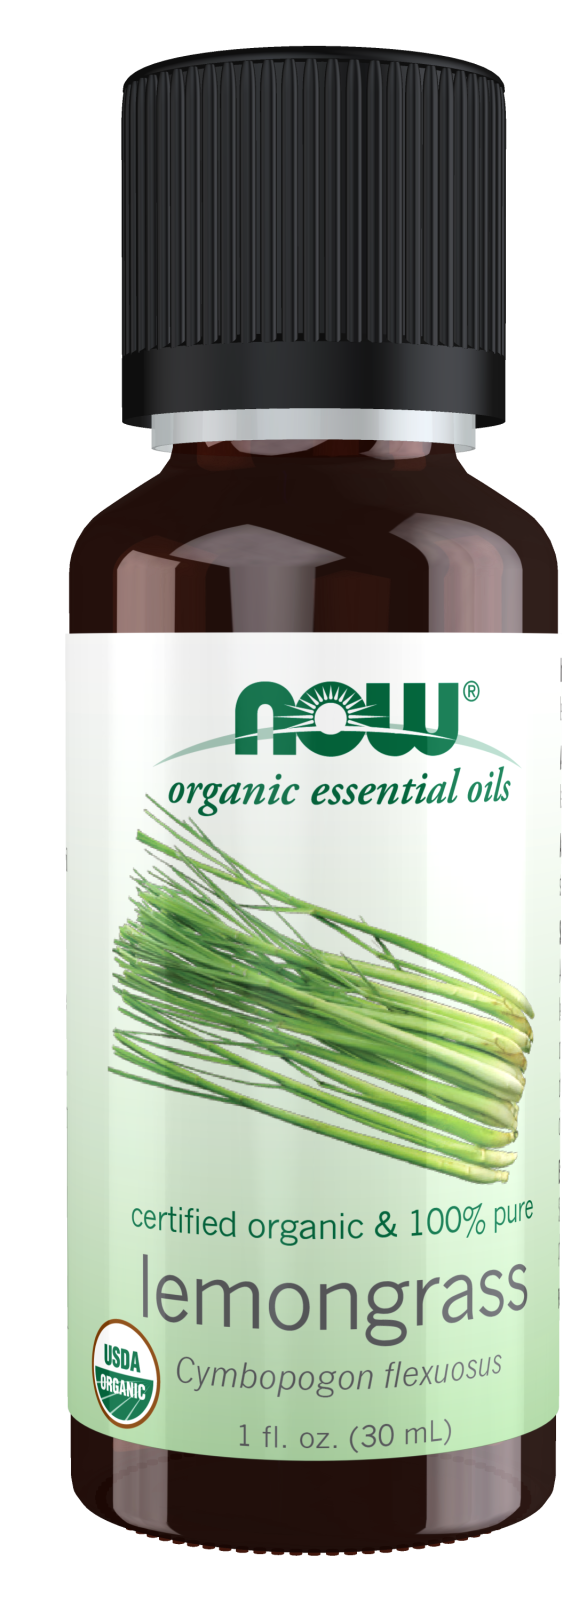 Lemongrass Oil, Organic - 1 fl. oz. Bottle Front